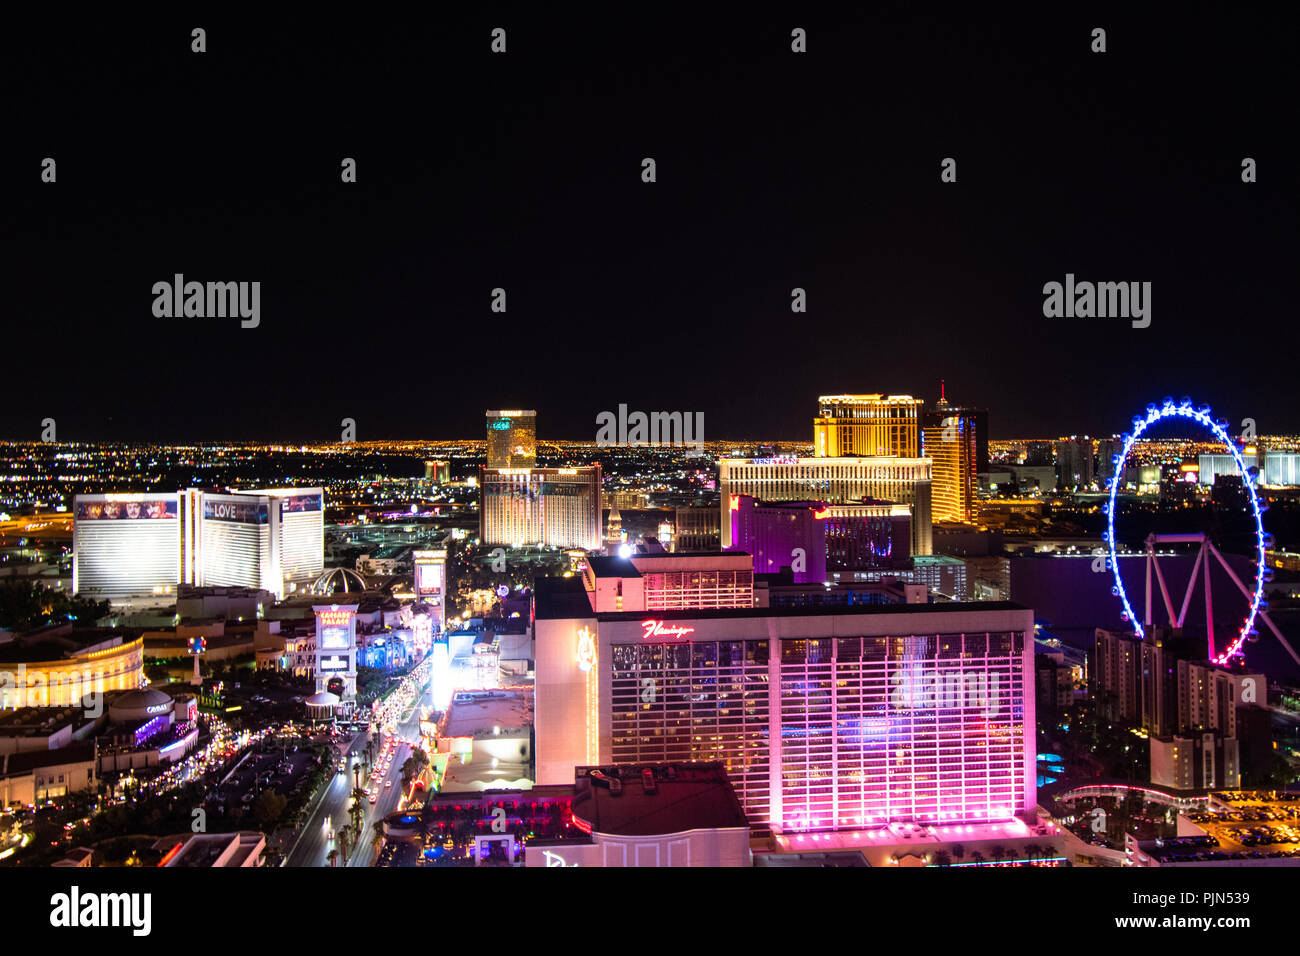 Las Vegas city at night editorial stock photo. Image of night - 122114643